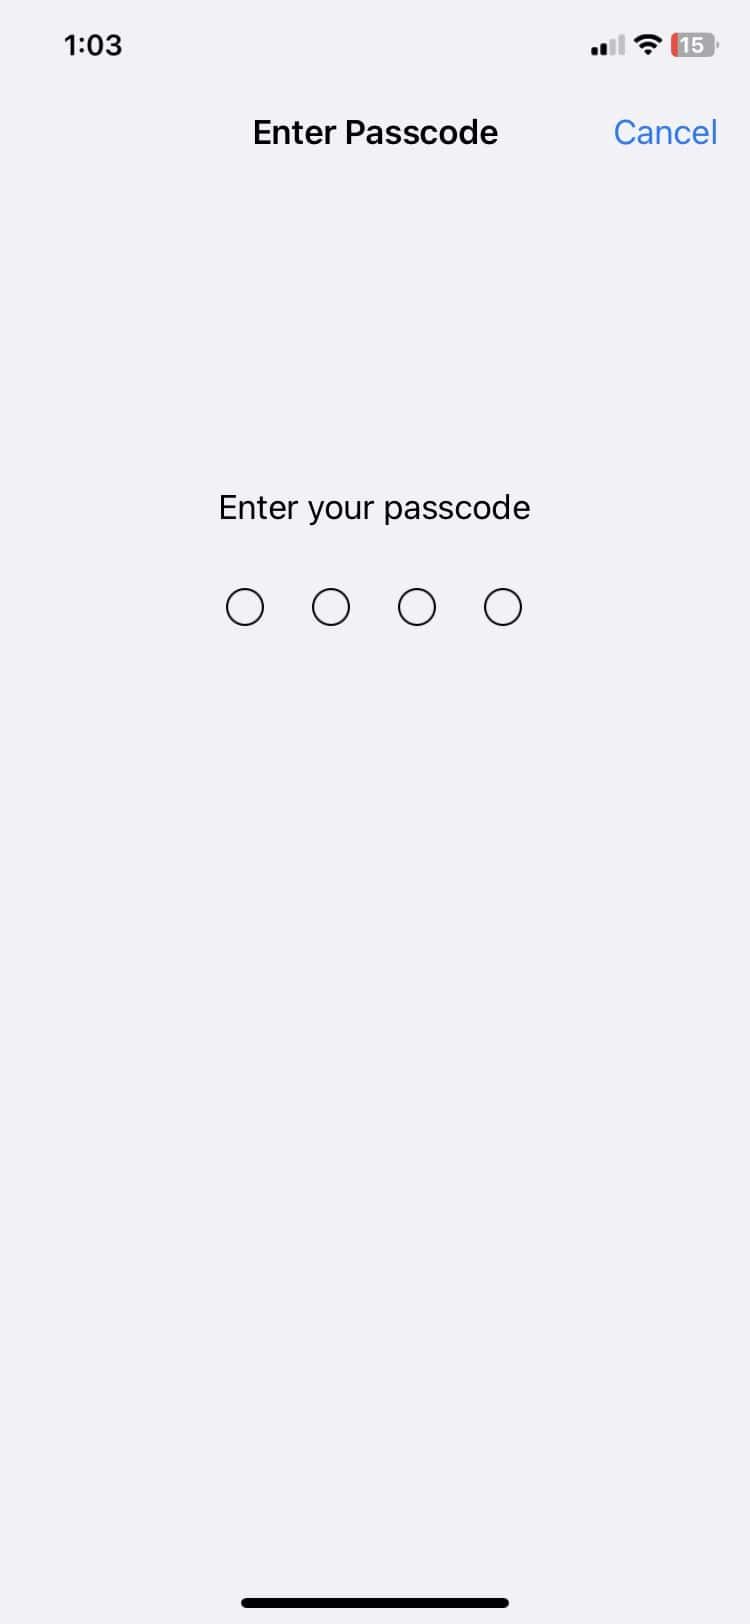 enter passcode in iPhone